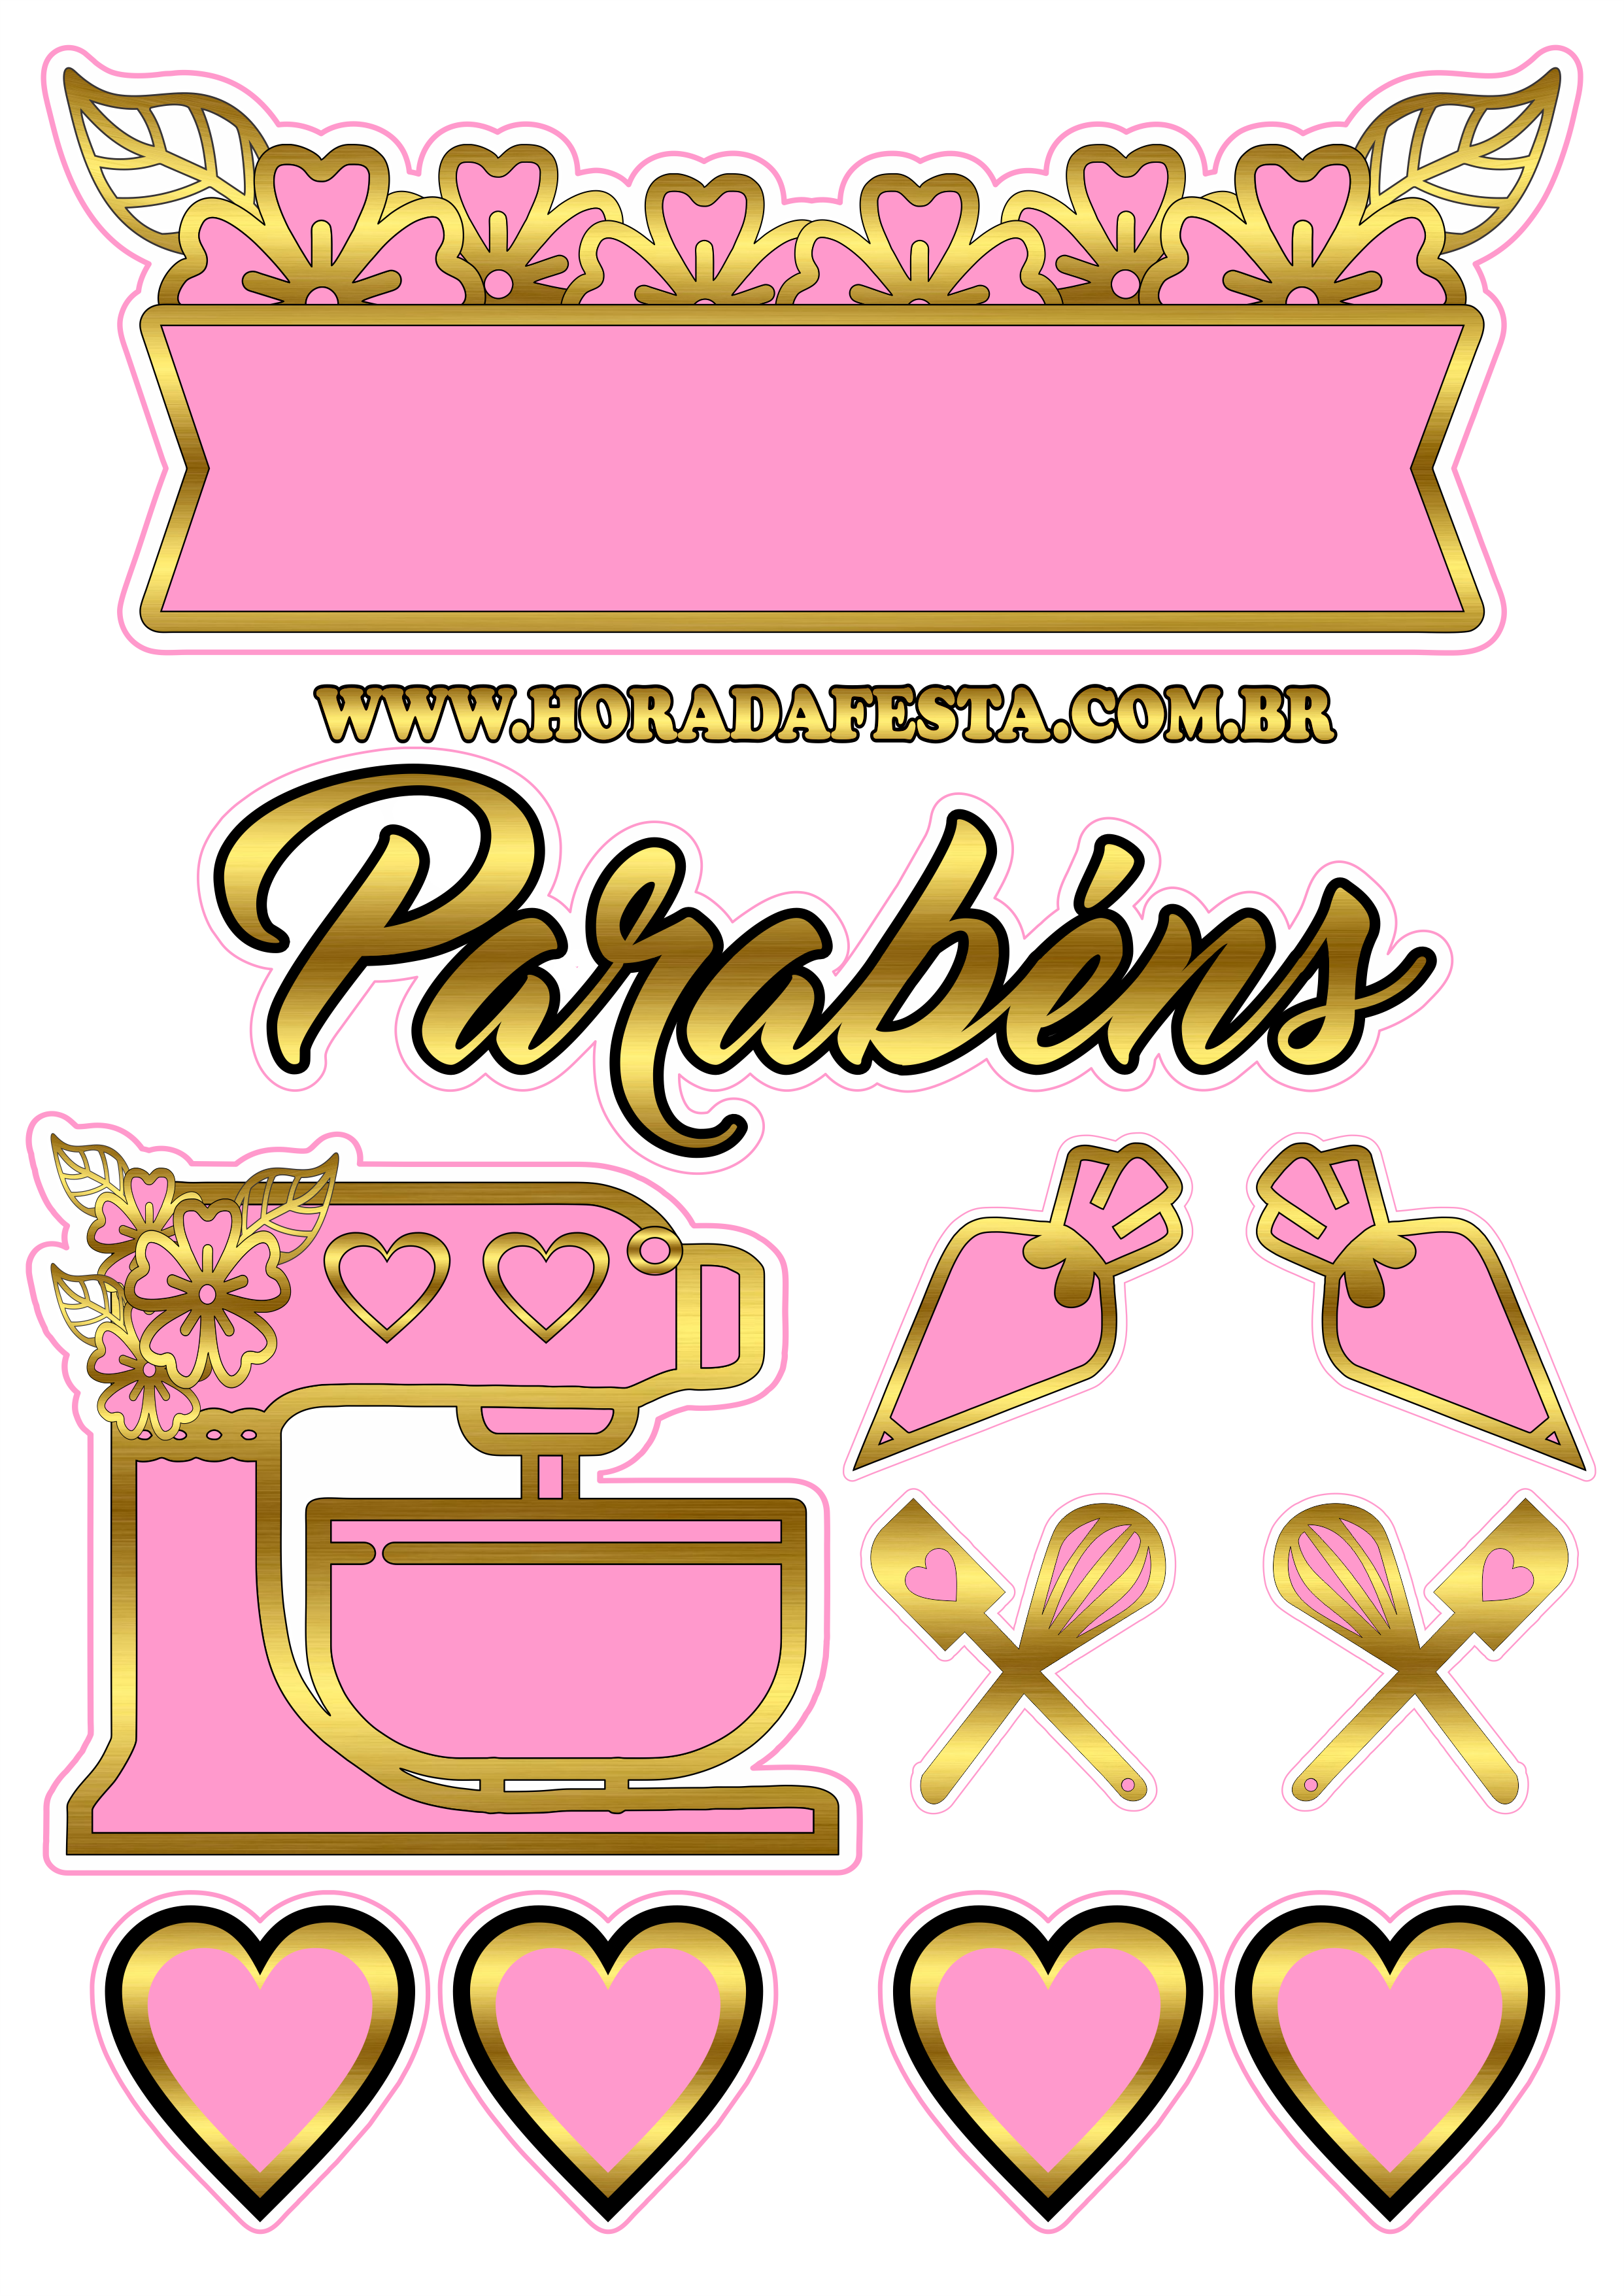 Topo de bolo tema confeiteira rosa com dourado pronto para imprimir parabéns corações decoração de aniversário png